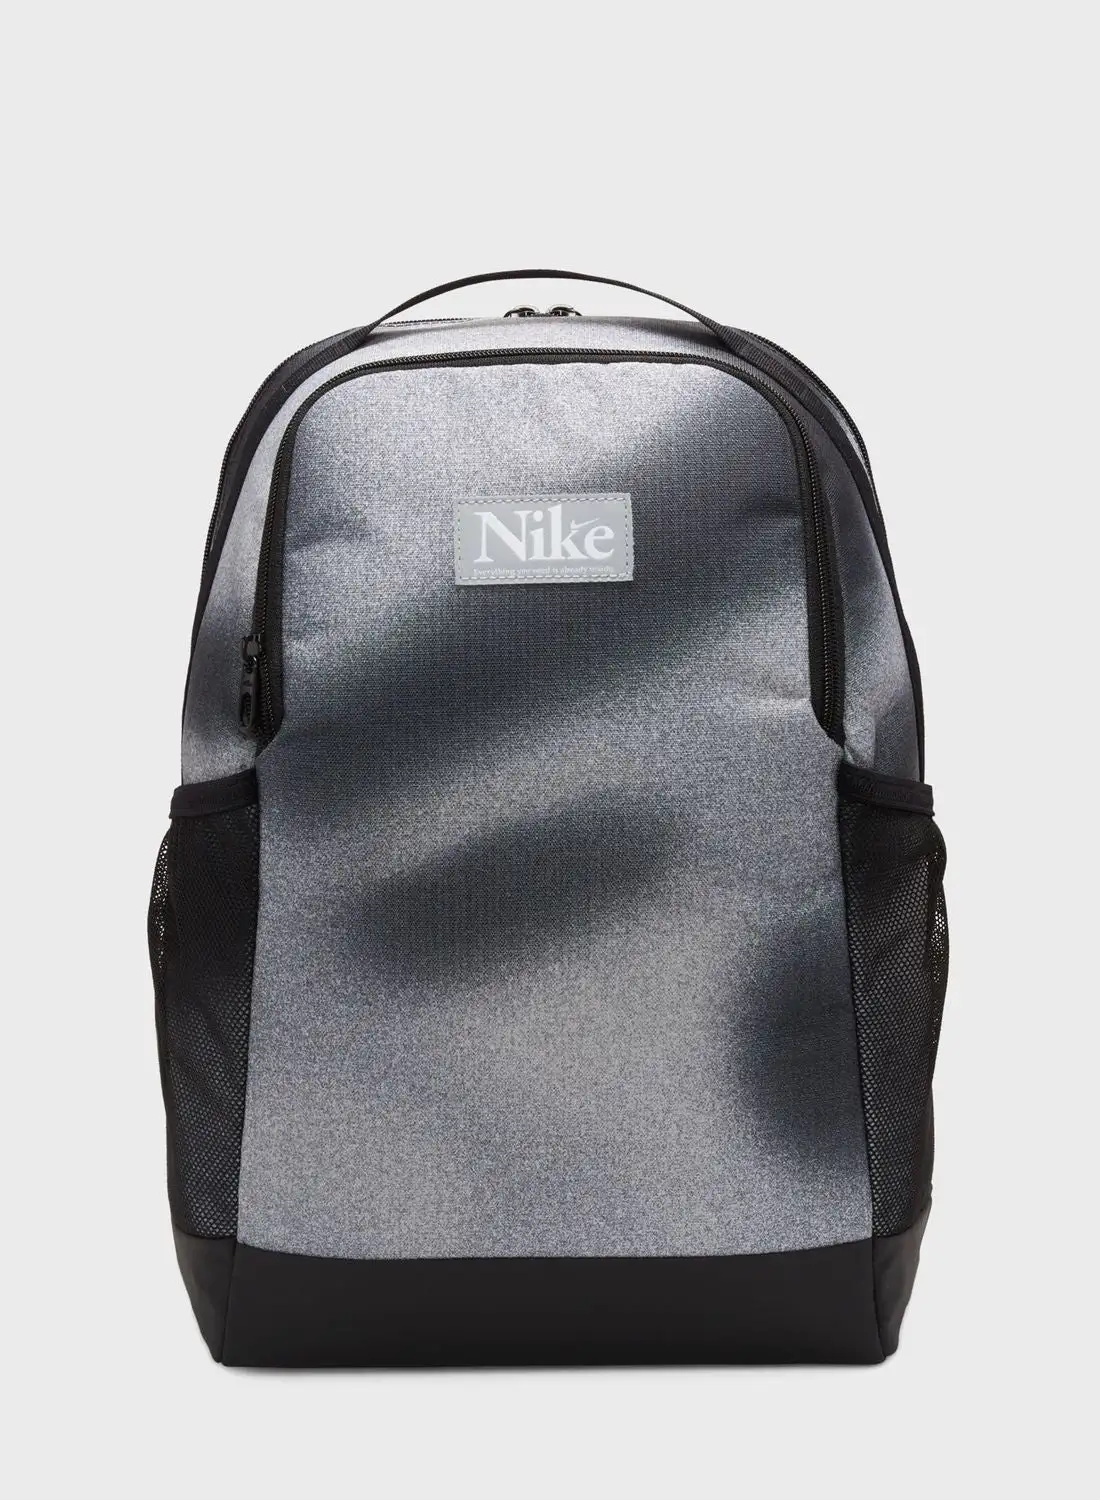 Nike Brasilia All Over Printed Backpack